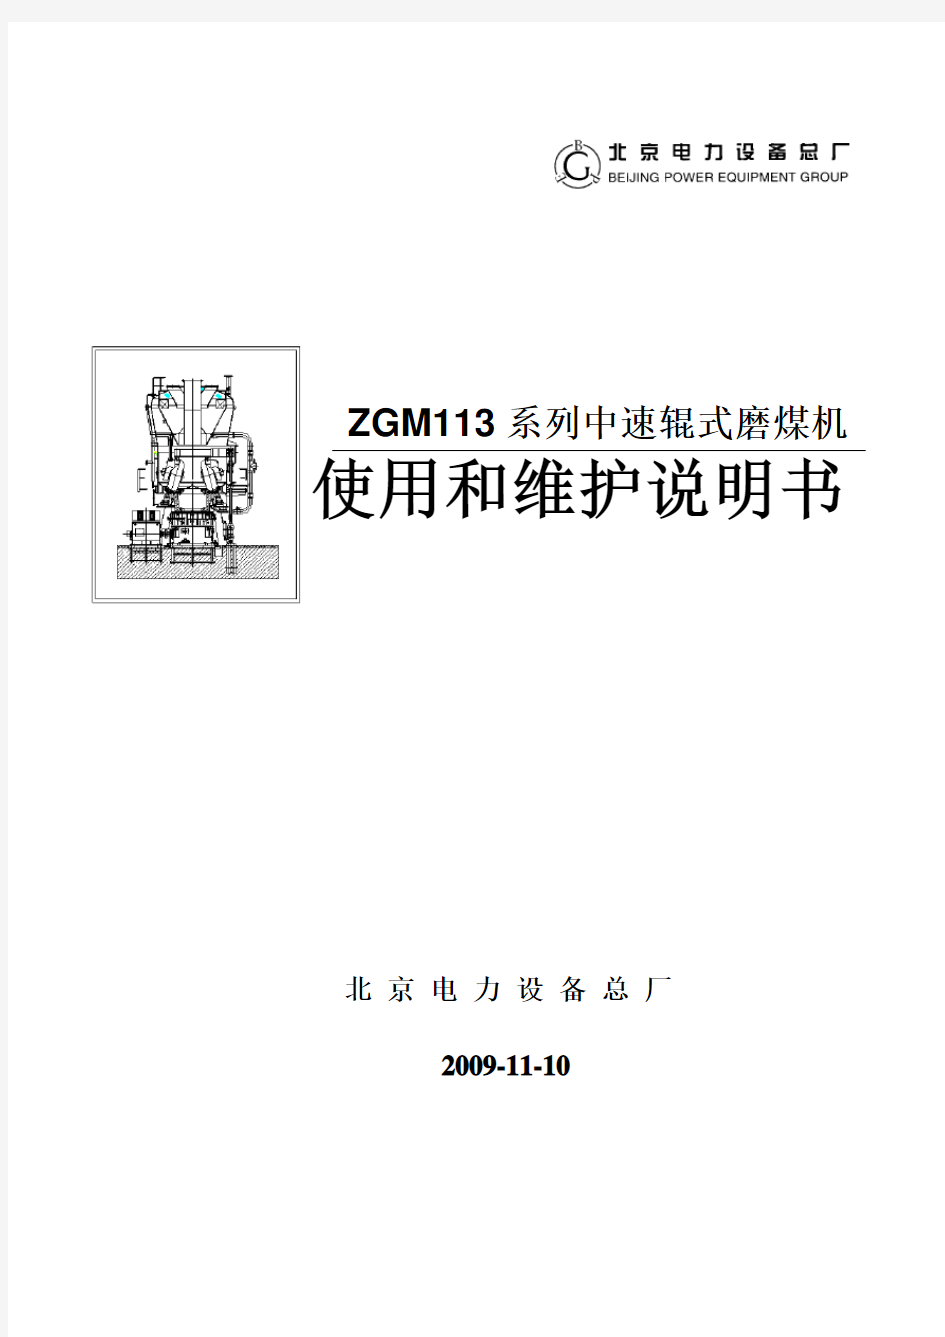 北京电力设备总厂ZGM113型中速磨煤机说明书(第三版)